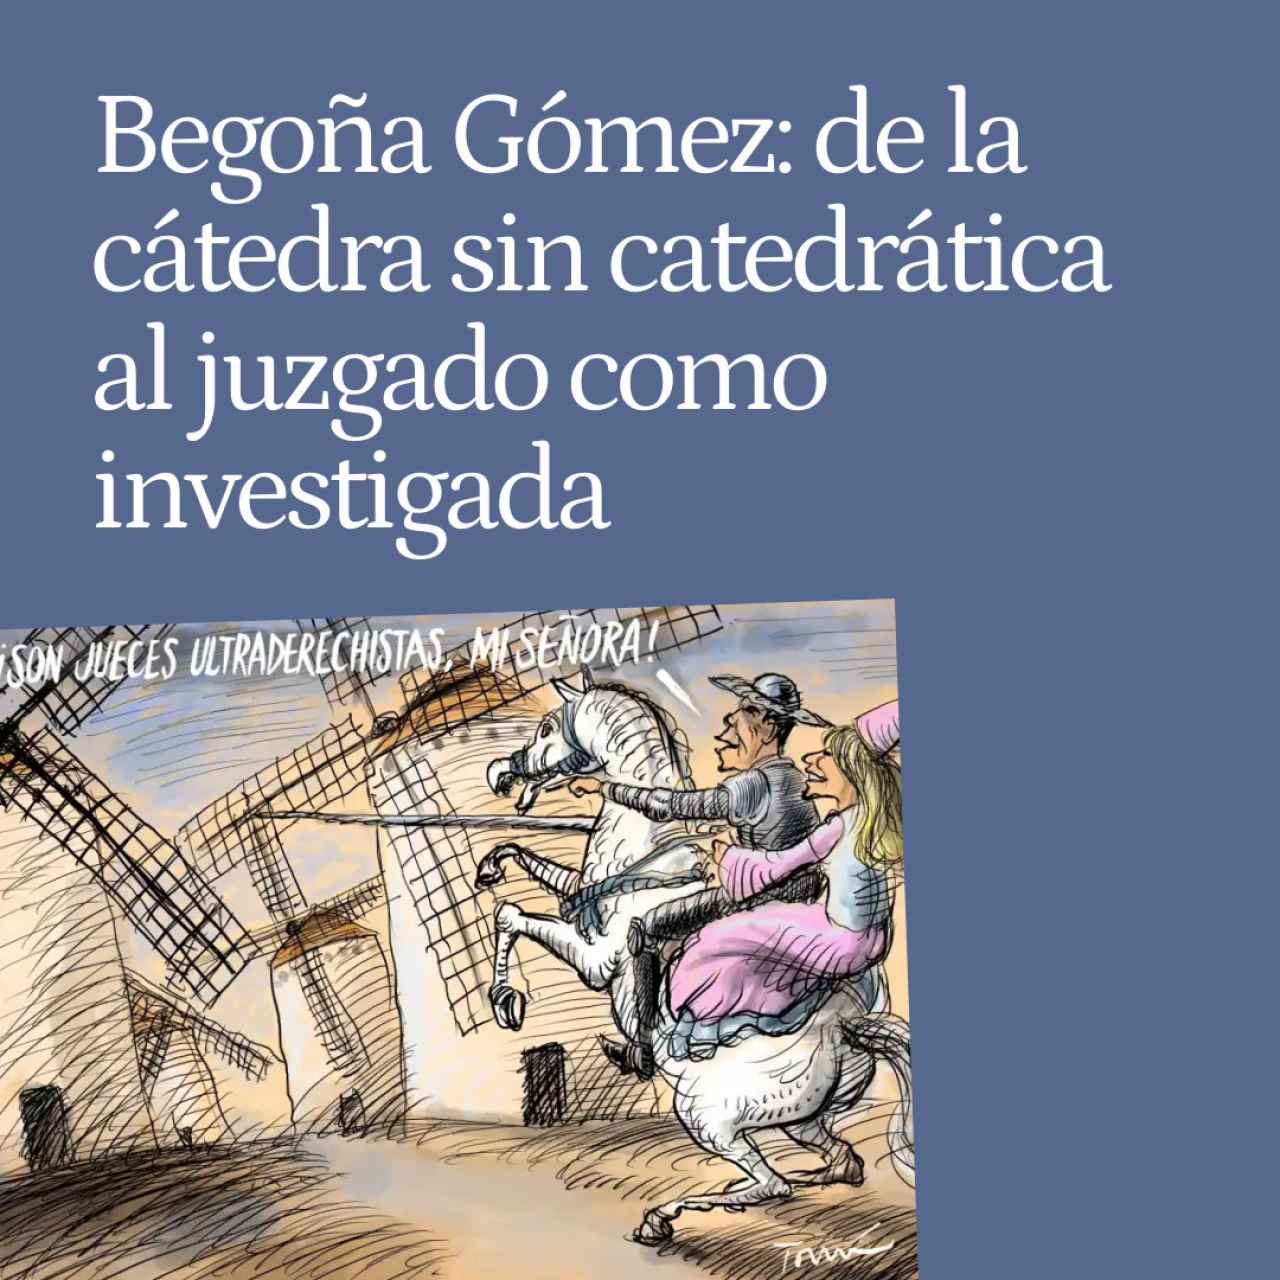 El insólito viaje de Begoña Gómez: de la cátedra que no exigía ser catedrática al juzgado como investigada